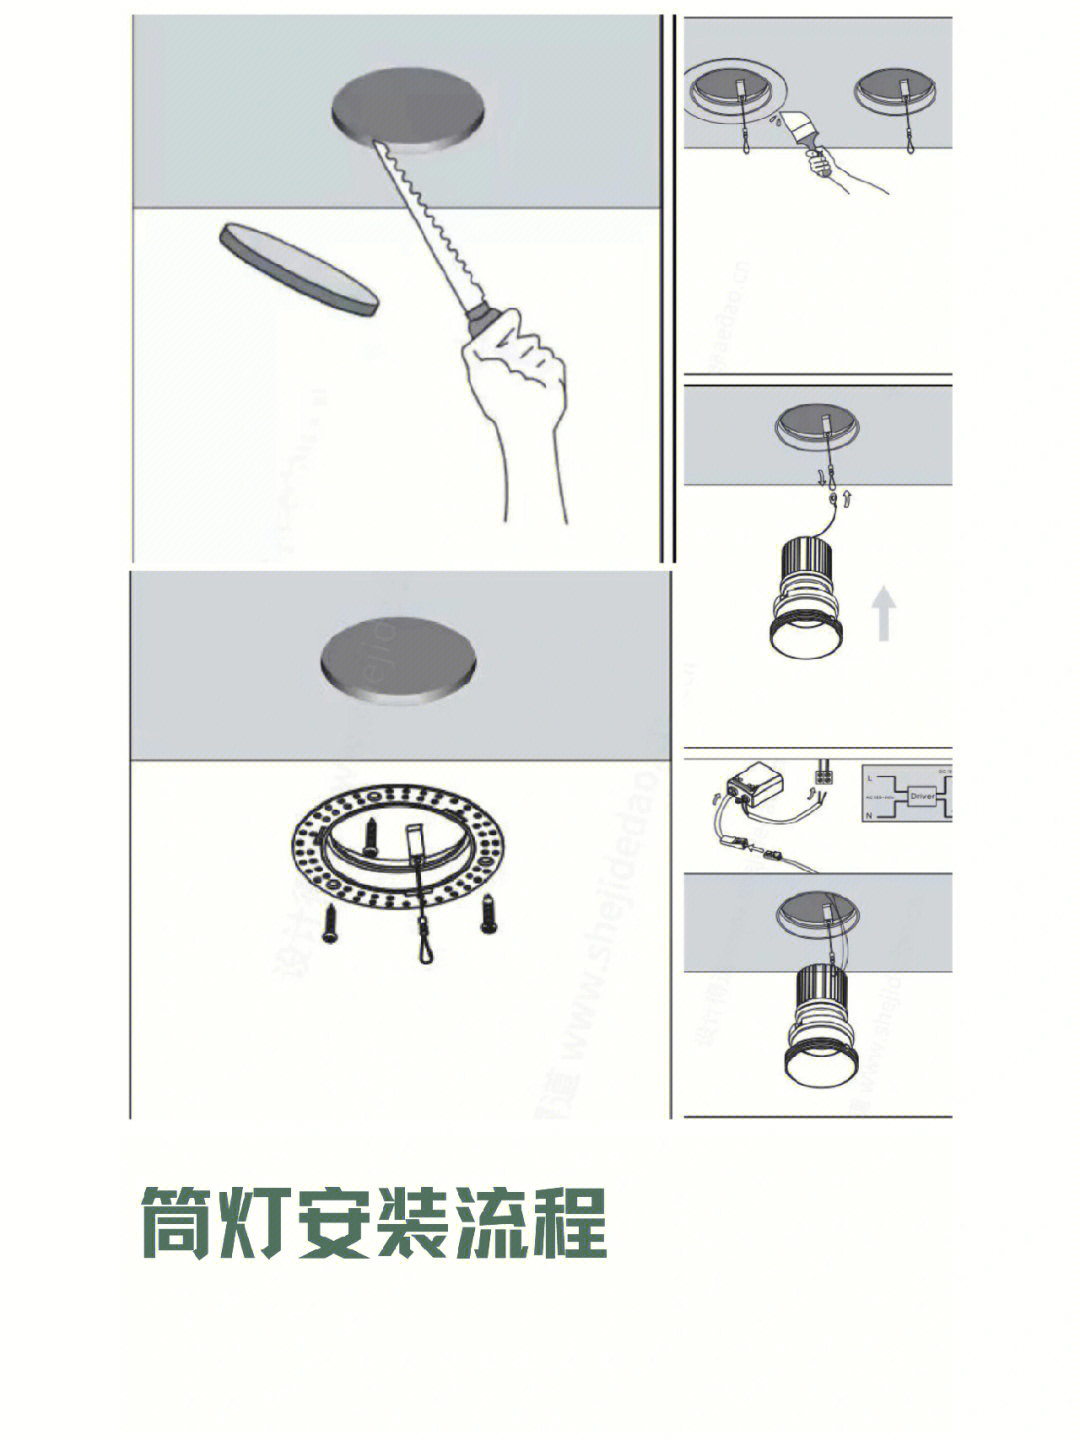 筒灯安装接线法图片